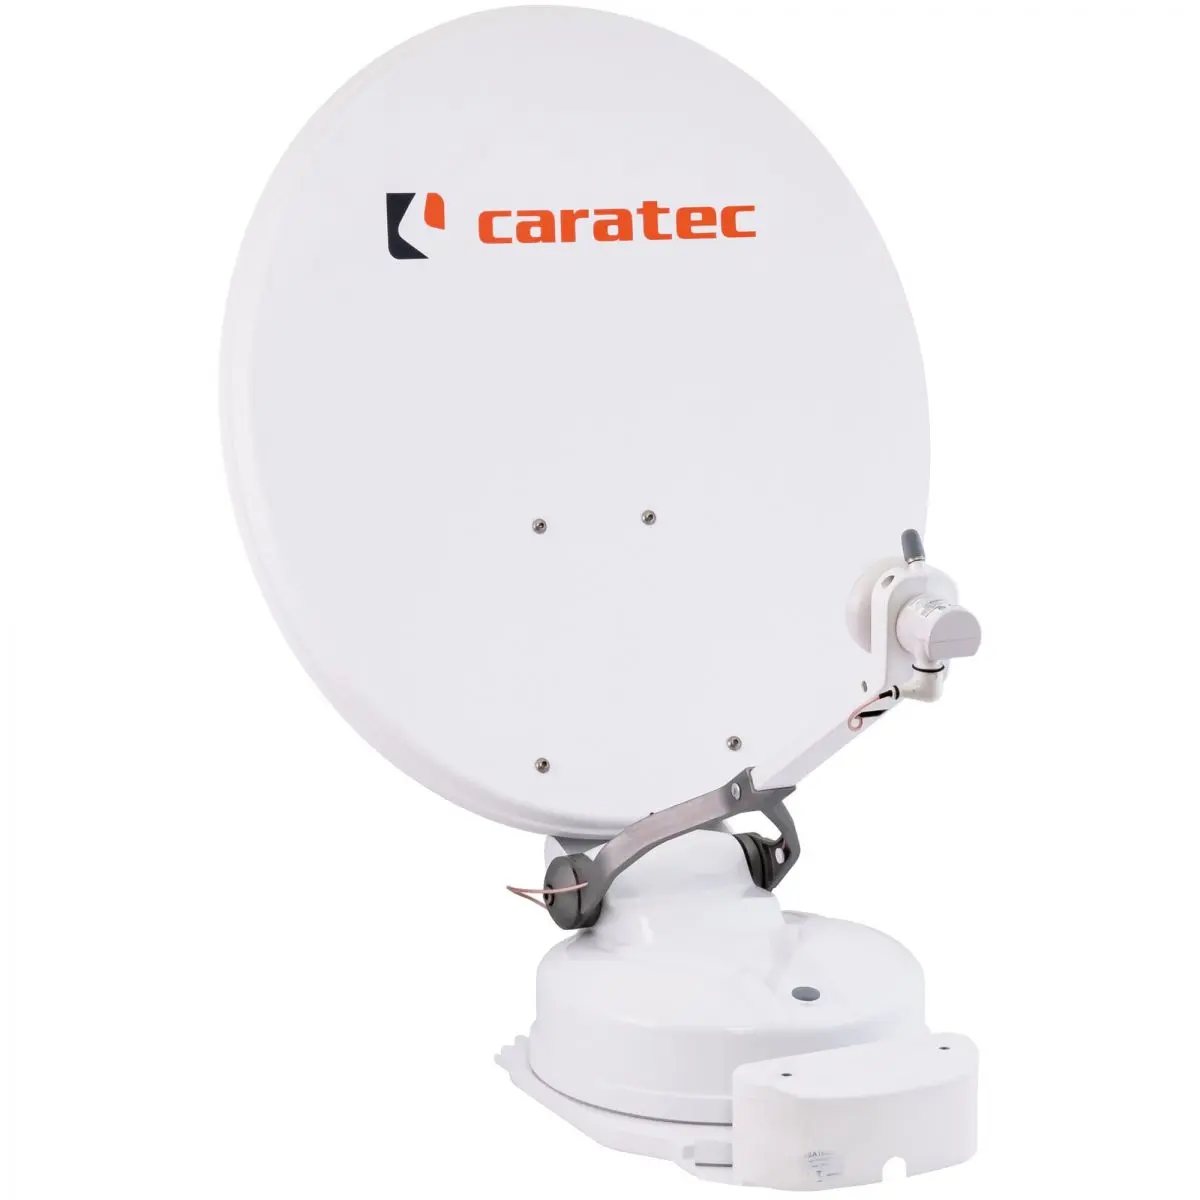 Caratec CASAT 600S műholdrendszer, fehér